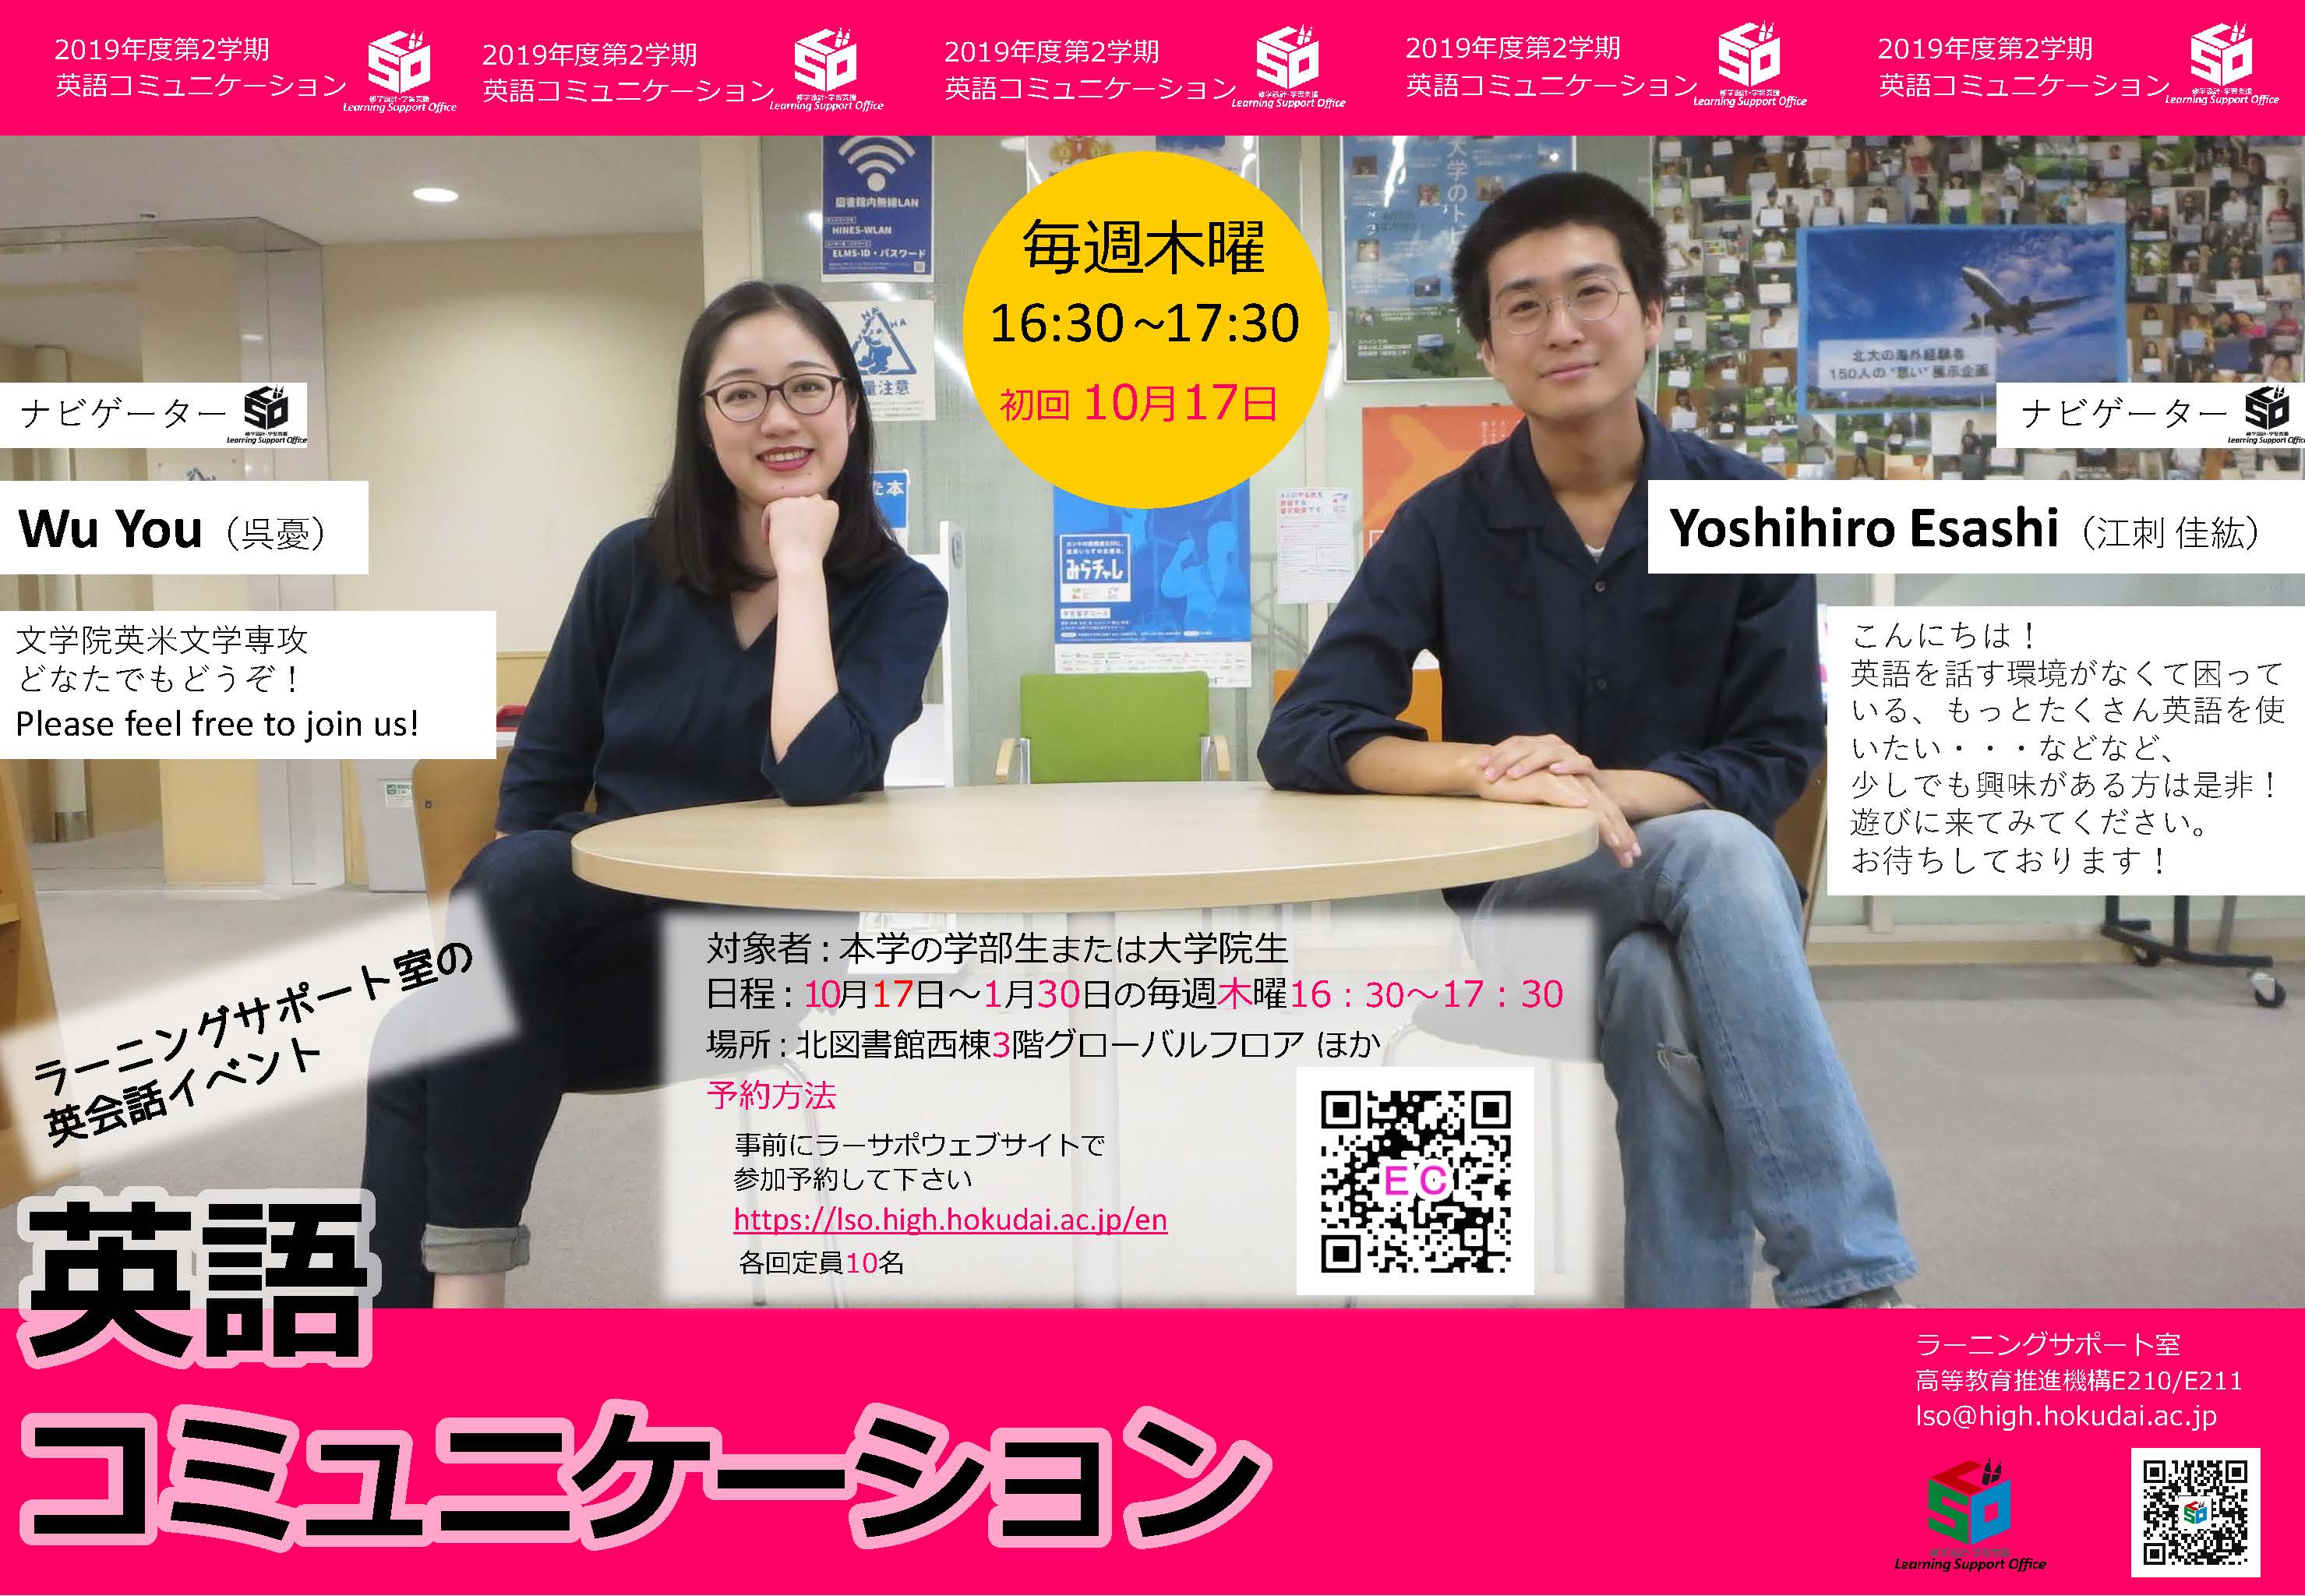 英語で話そう 英語コミュニケーション 開催のお知らせ 毎週木曜16 30 17 30 Hokkaido University Library